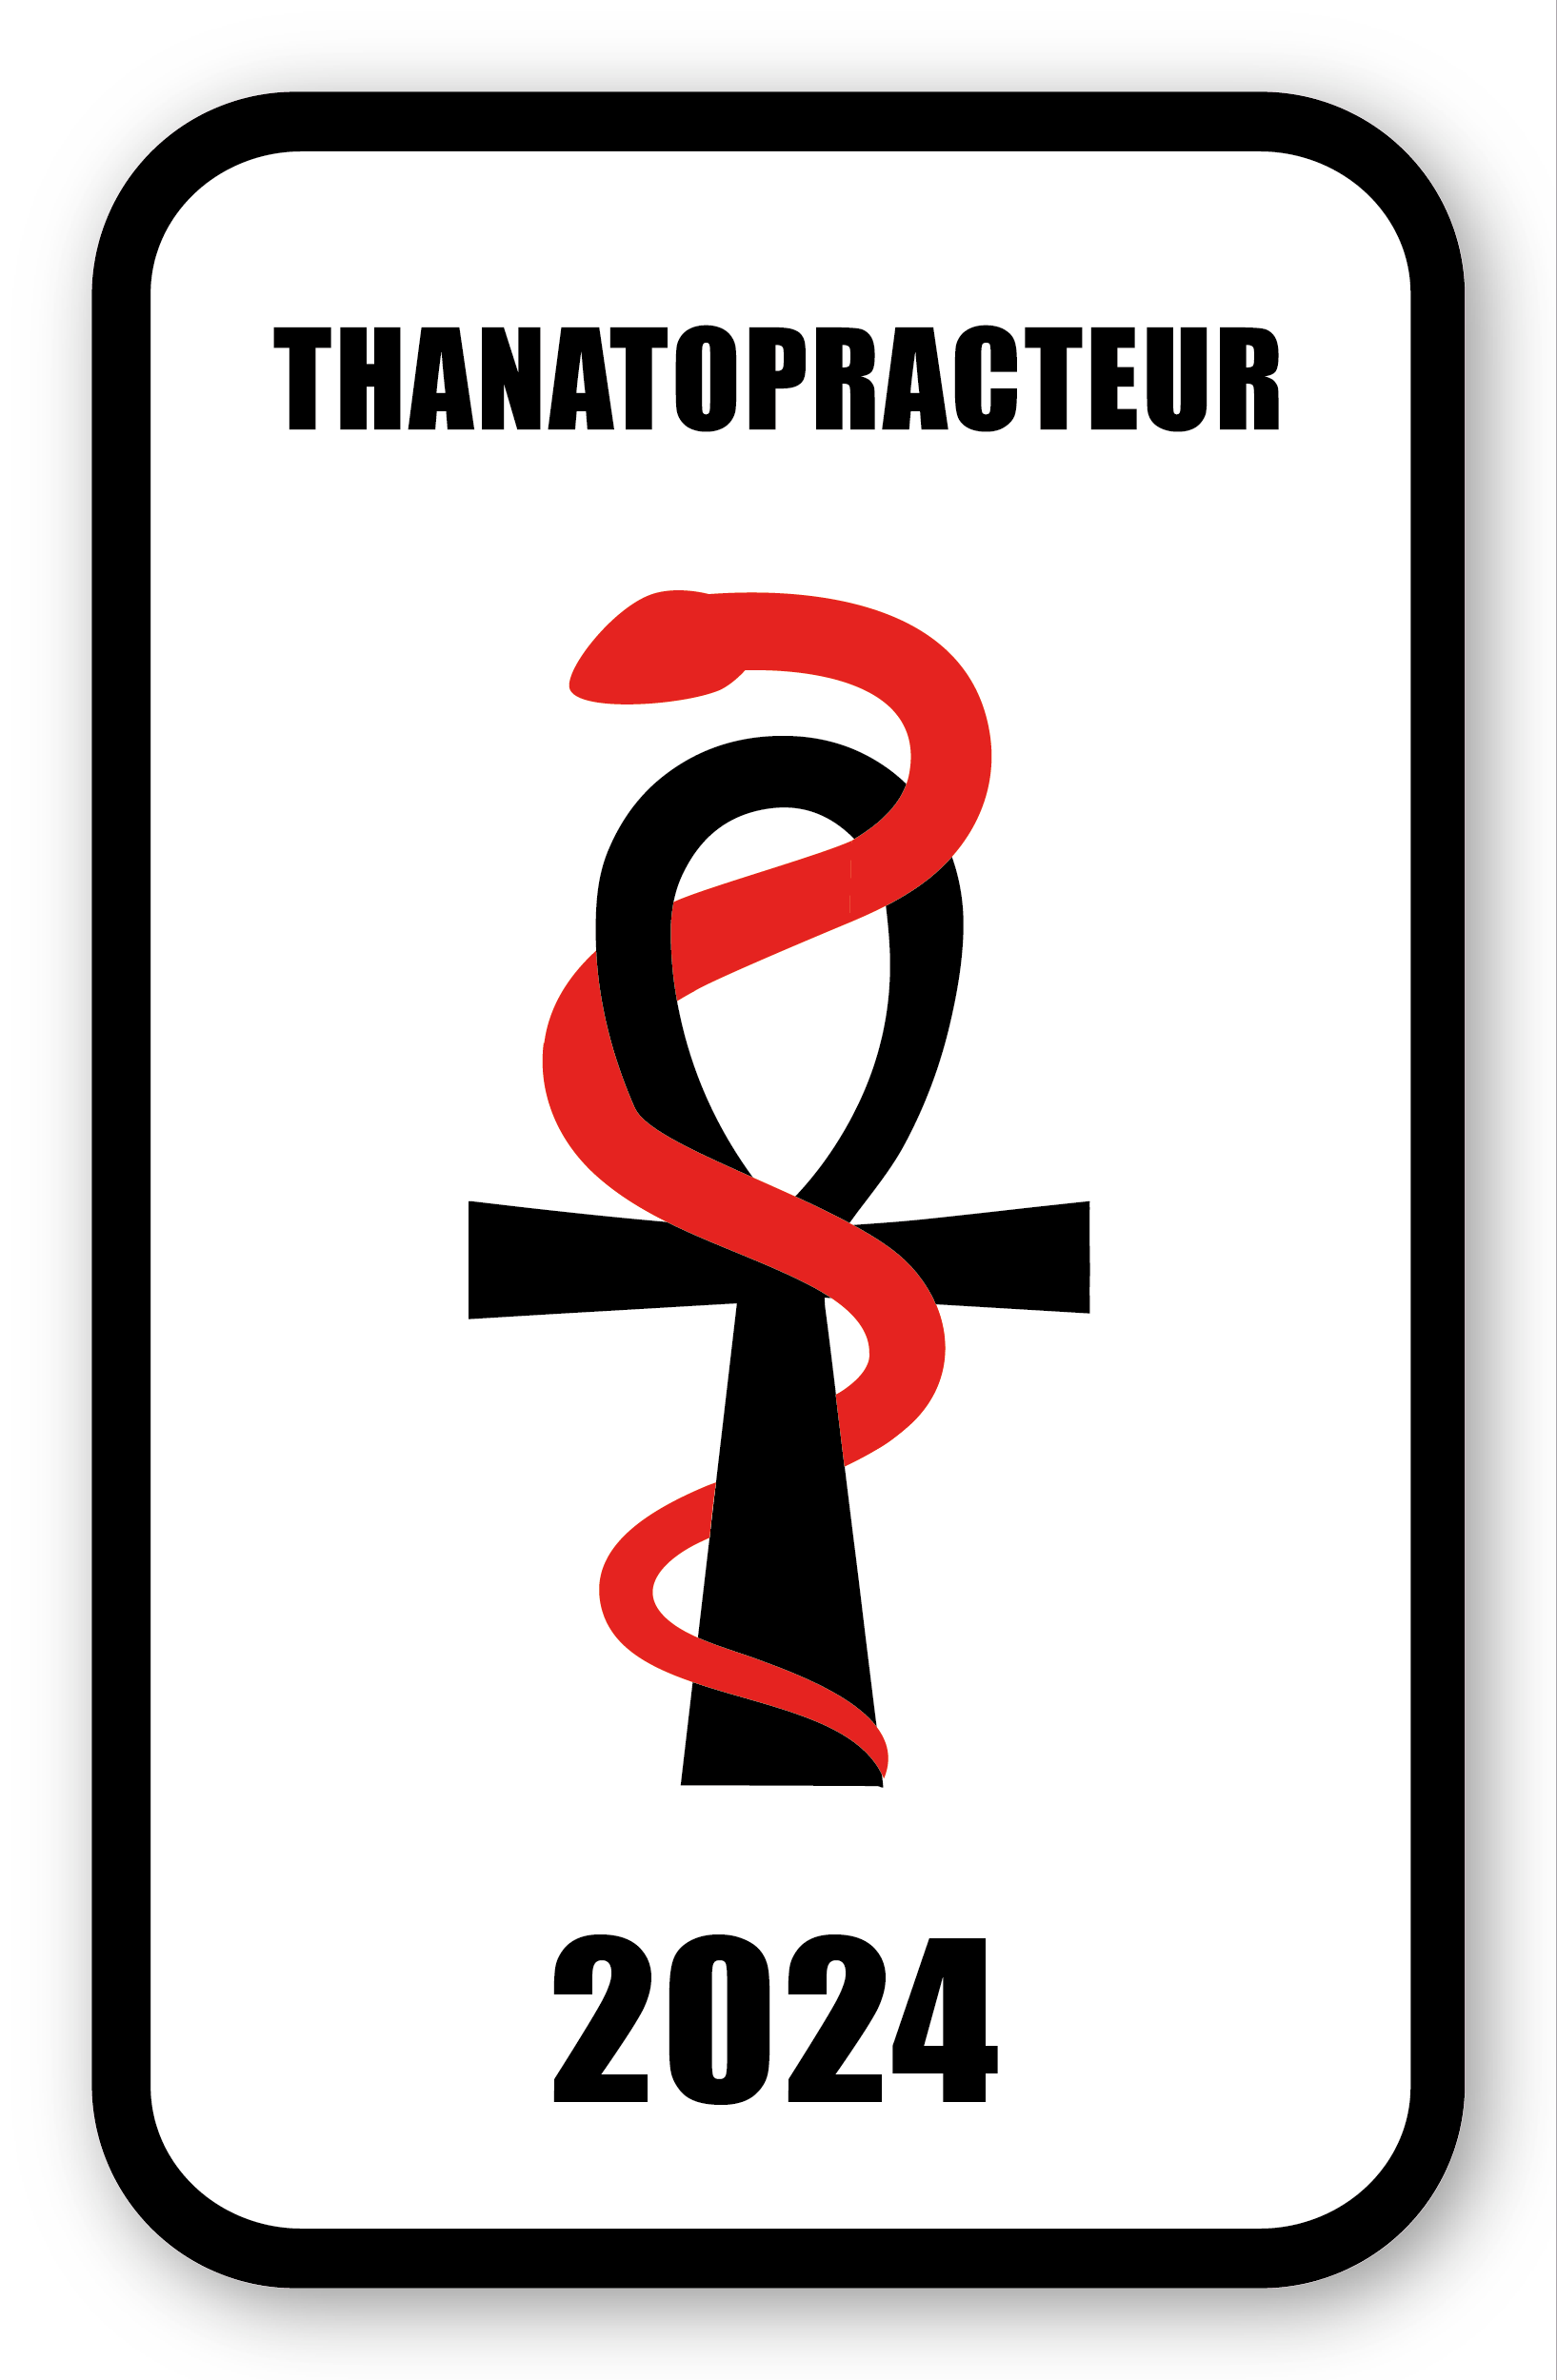 Autocollant Sticker - Vignette Caducée 2024 pour Pare Brise en Vitroph